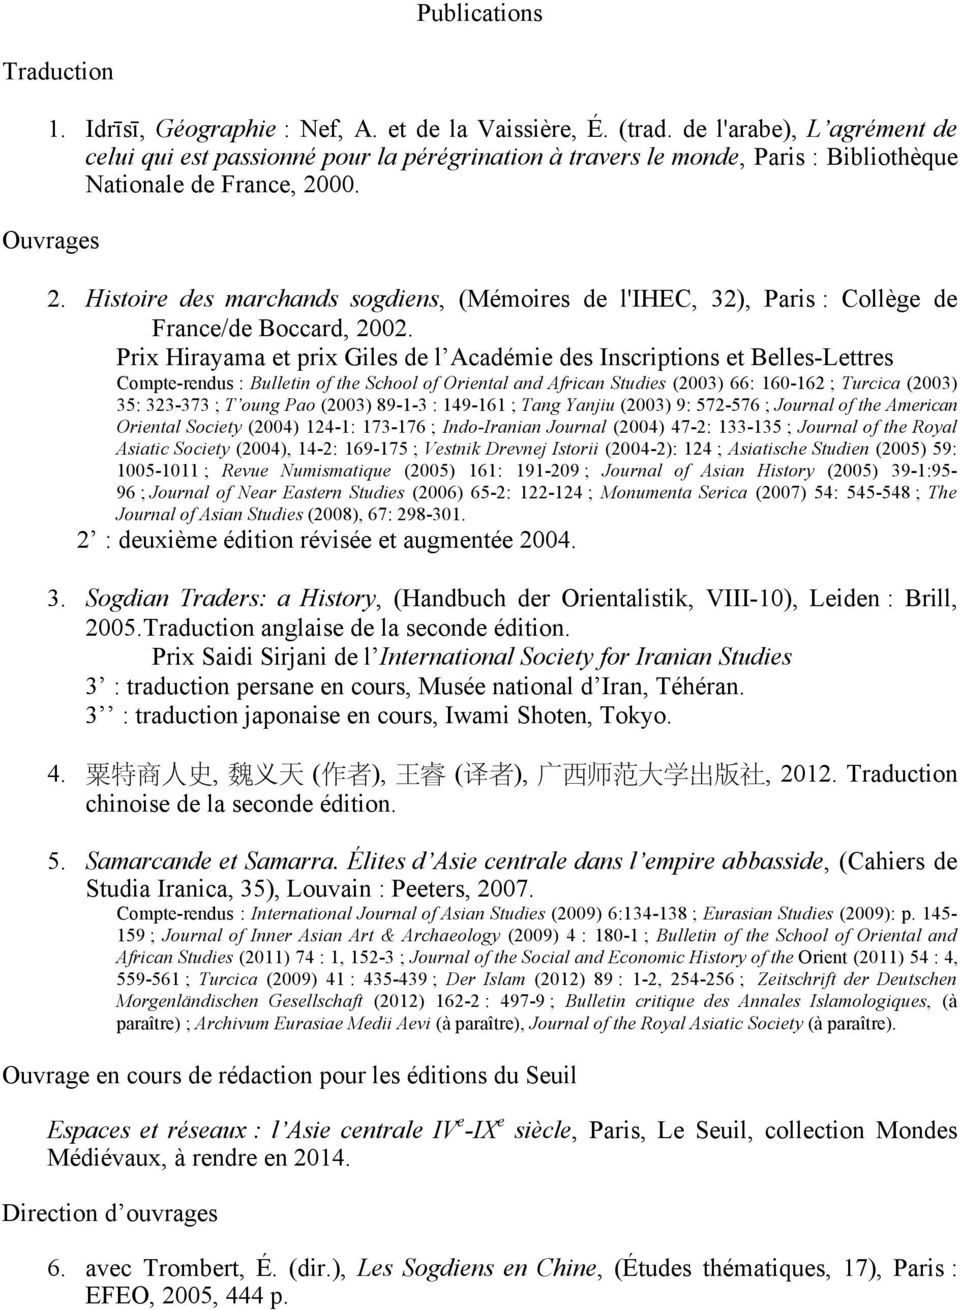 Histoire des marchands sogdiens, (Mémoires de l'ihec, 32), Paris : Collège de France/de Boccard, 2002.